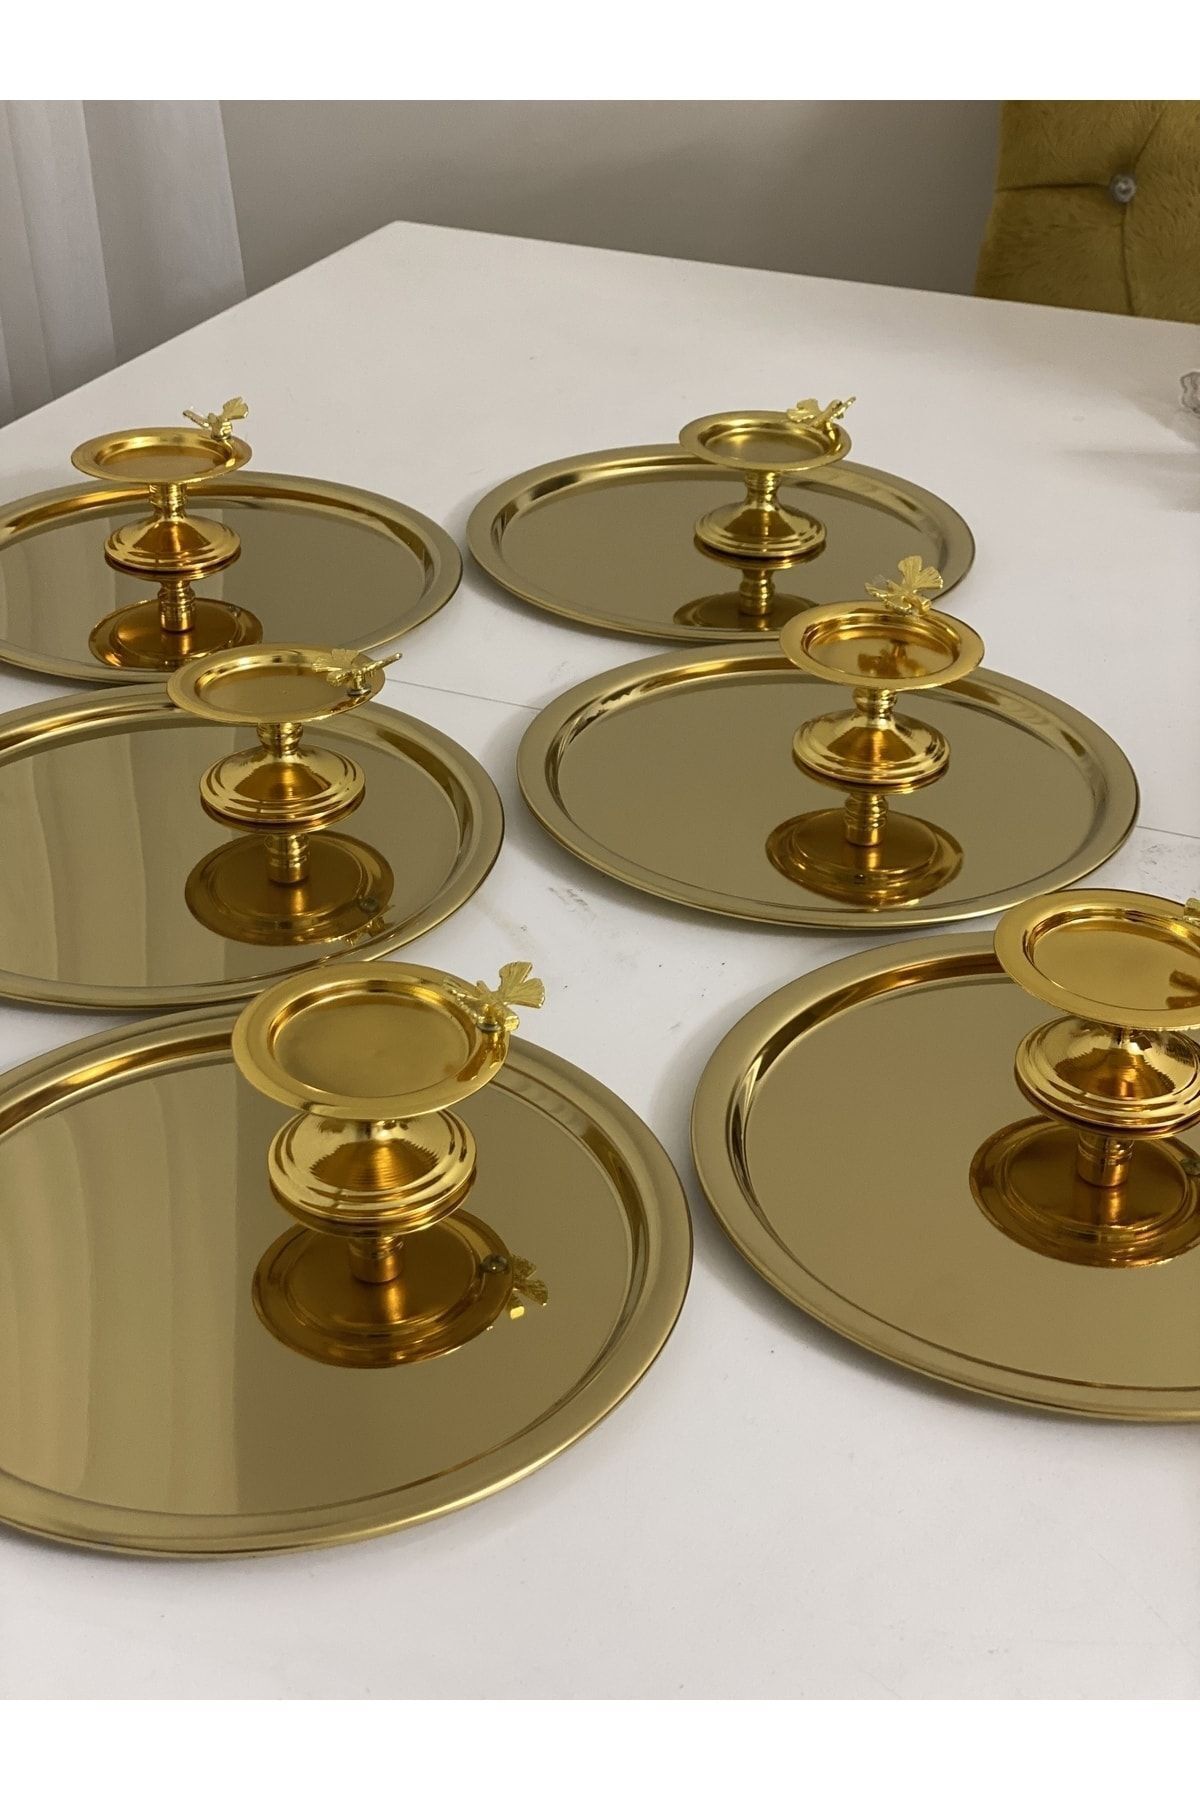 Elzemm store 2 Farklı Model 6 Lı Gold Yuvarlak Sunum Tepsisi Ve 6 Lı Kelebekli Gold Makaronluk